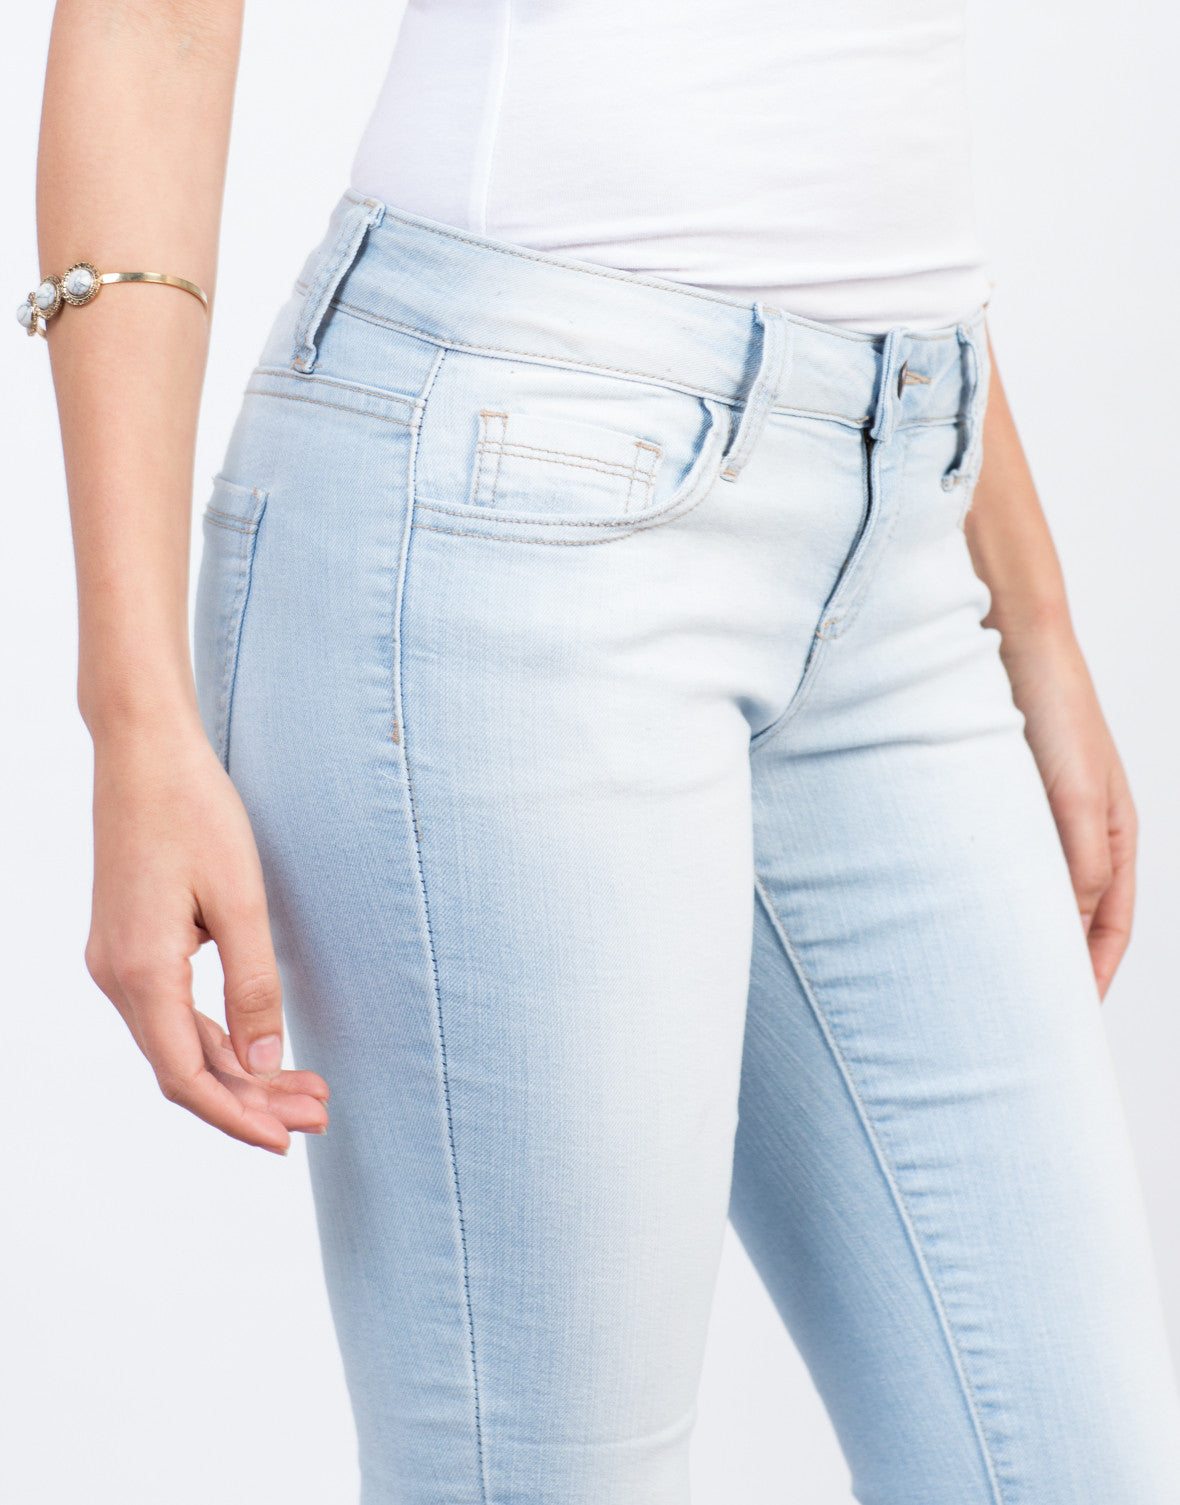 Faded Knee Slit Jeans - Light Blue Denim - Vintage Wash Jean – 2020AVE